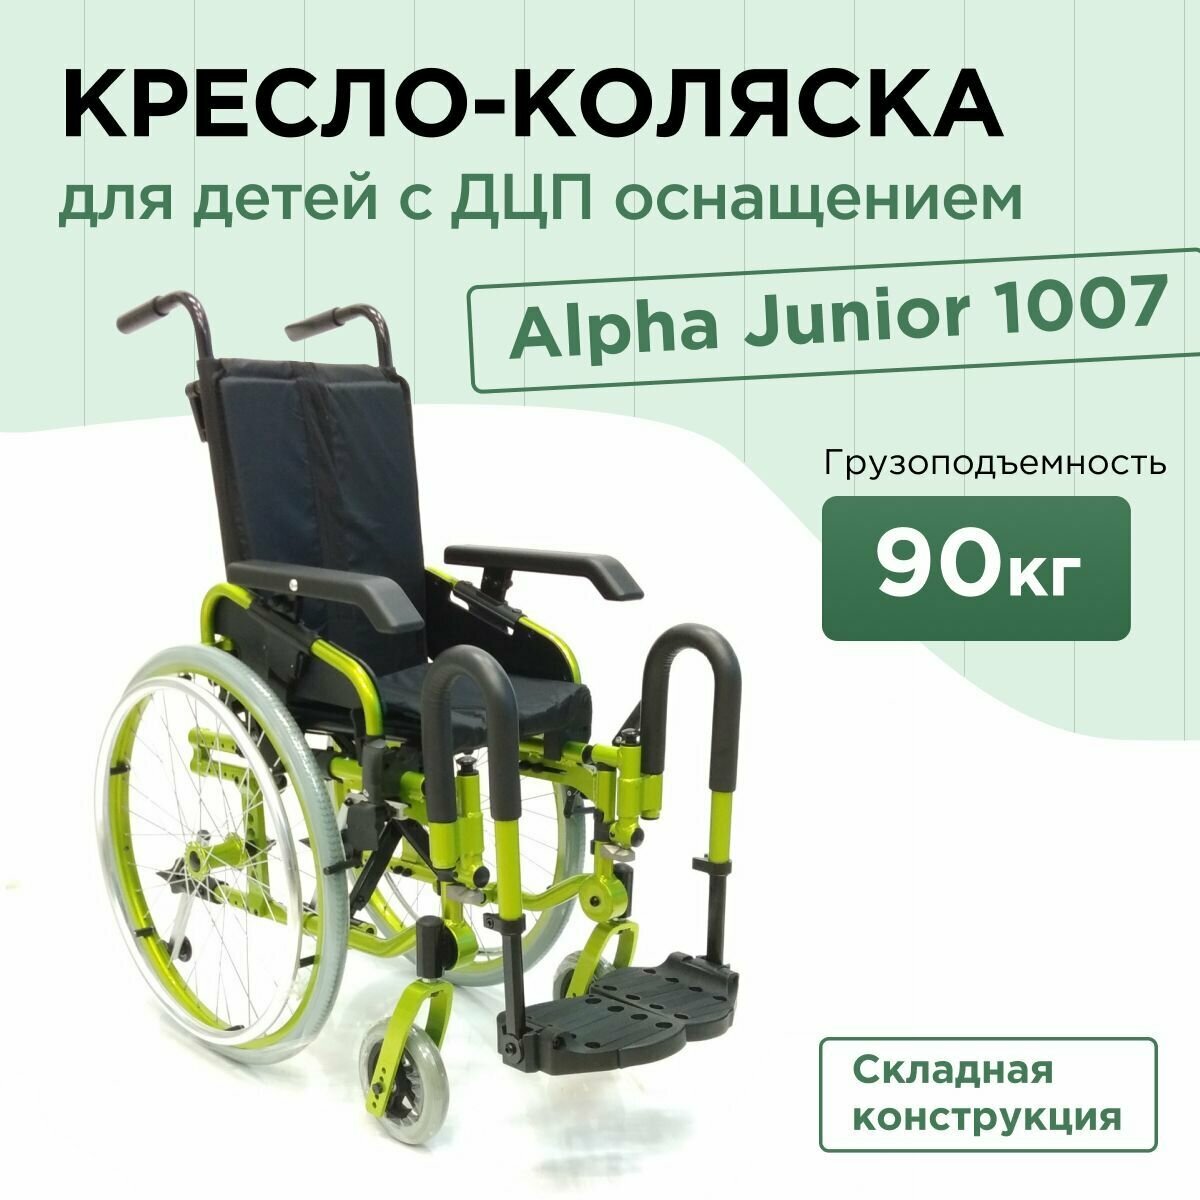 Кресло-коляска для детей-инвалидов и детей с заболеванием ДЦП Alpha Junior 1007 механическая